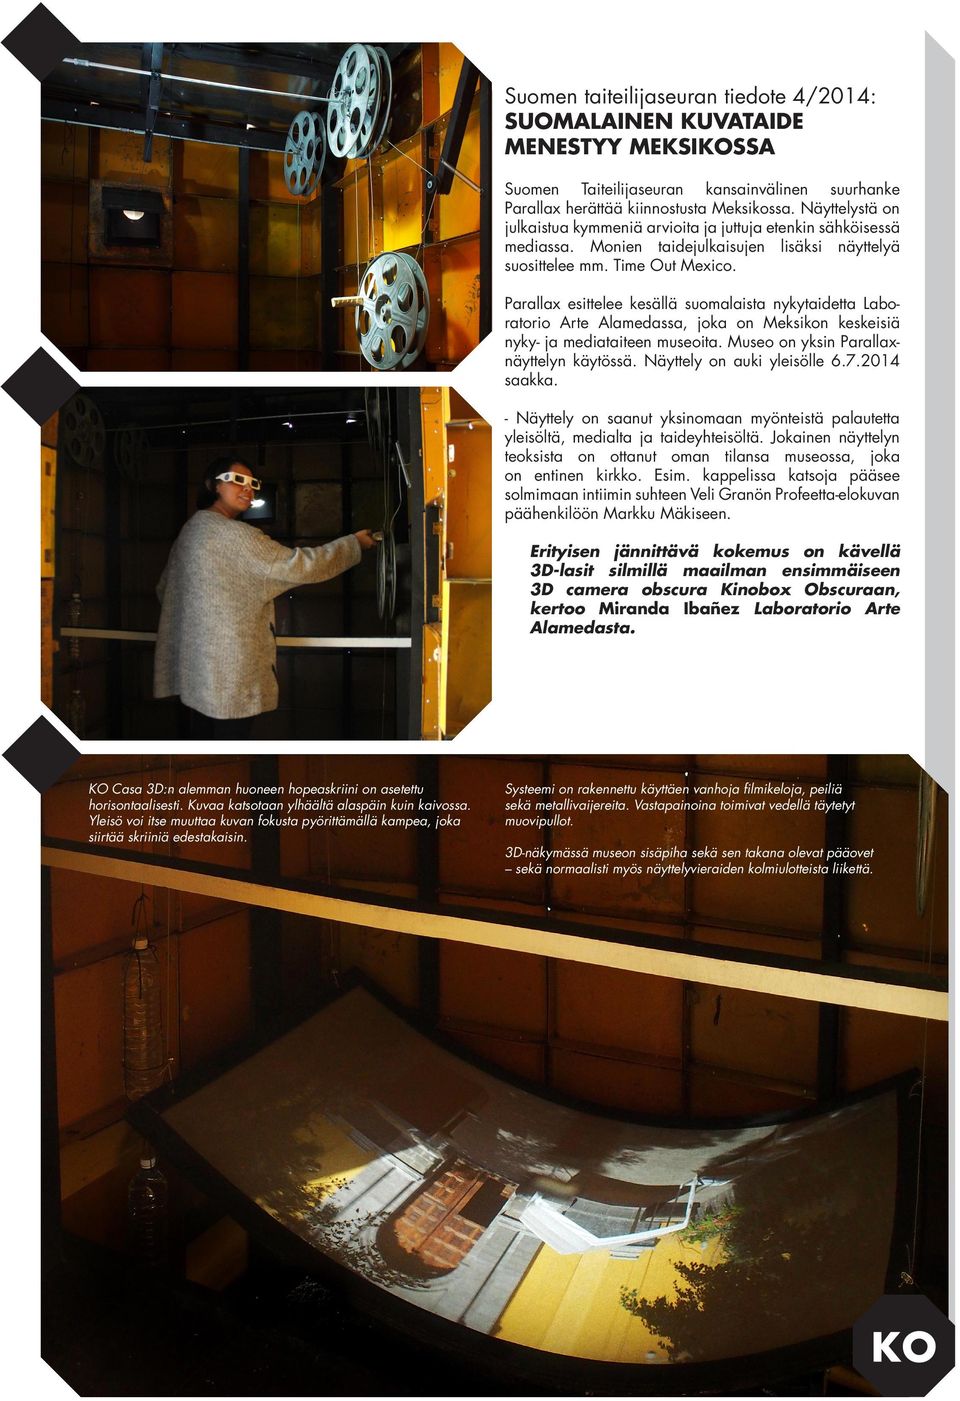 Parallax esittelee kesällä suomalaista nykytaidetta Laboratorio Arte Alamedassa, joka on Meksikon keskeisiä nyky- ja mediataiteen museoita. Museo on yksin Parallaxnäyttelyn käytössä.